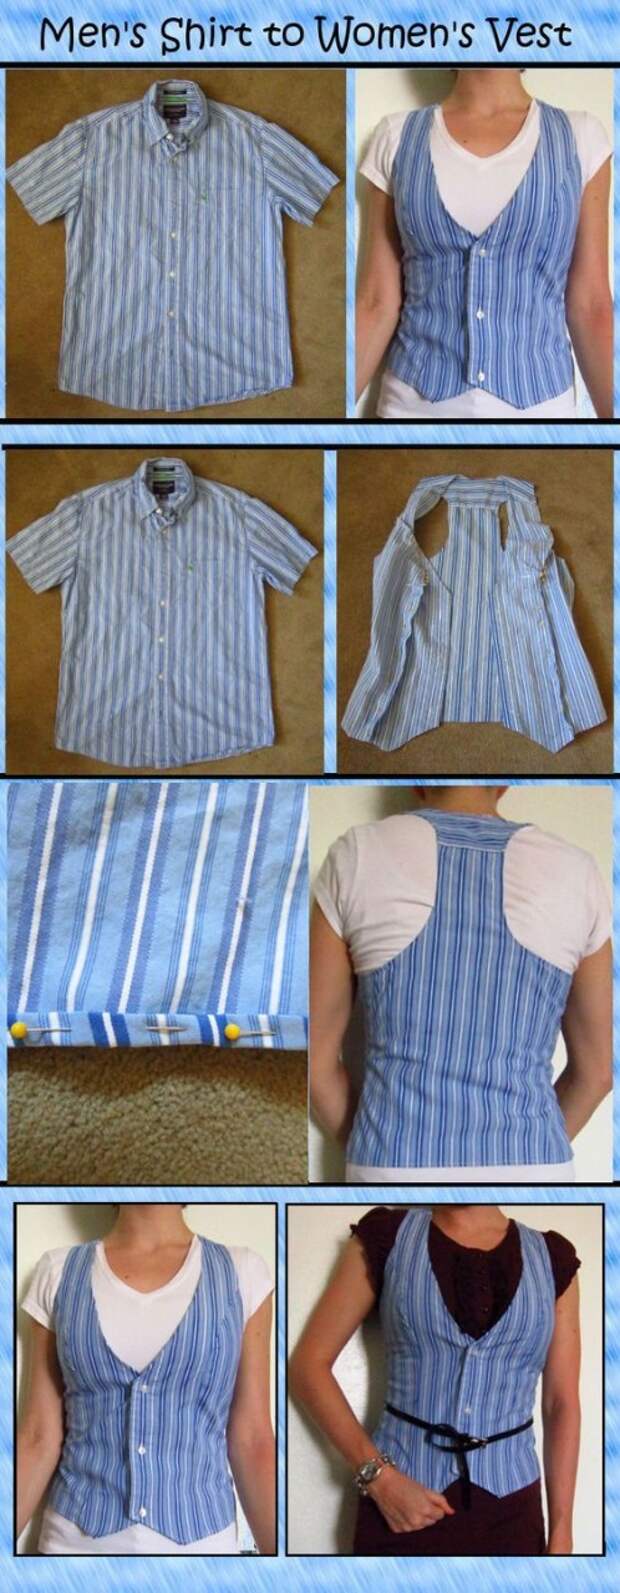 Как из мужской рубашки сделать женскую блузку: пошагово, фото